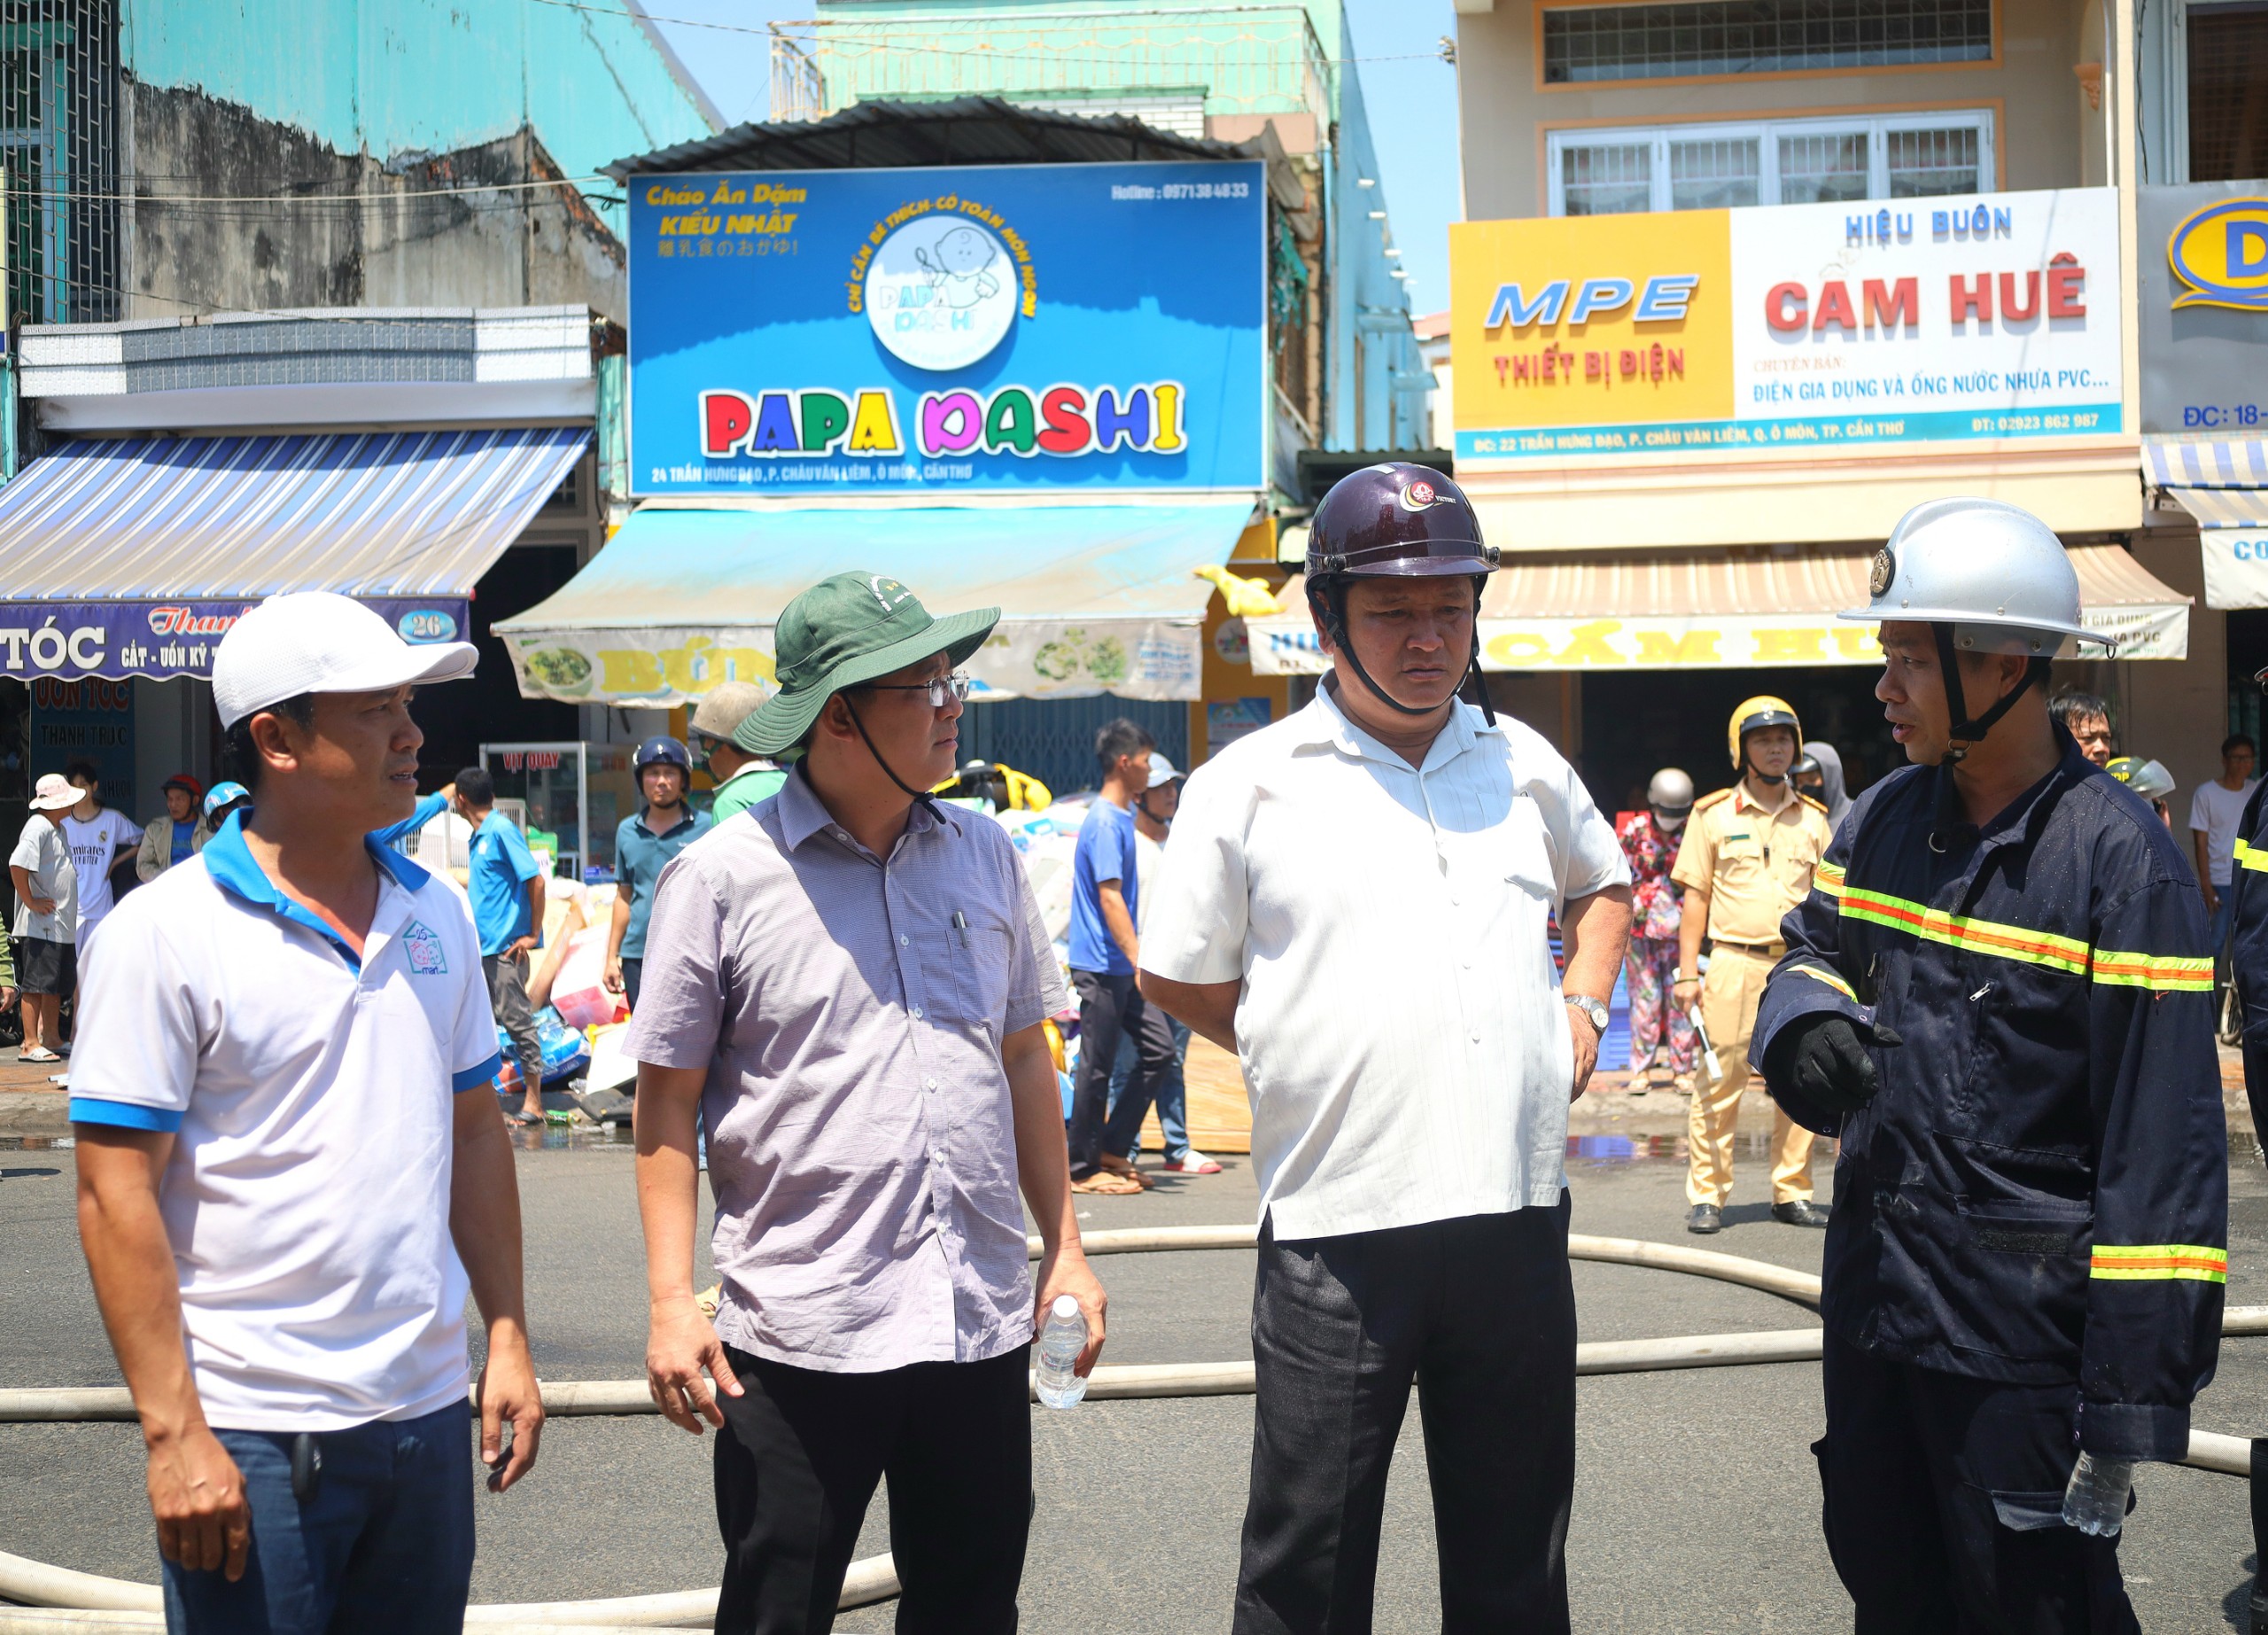 Ông Võ Anh Huy (thứ 2 từ trái qua) - Chủ tịch UBND quận Ô Môn có mặt ở hiện trường trực tiếp chỉ đạo công tác chữa cháy.